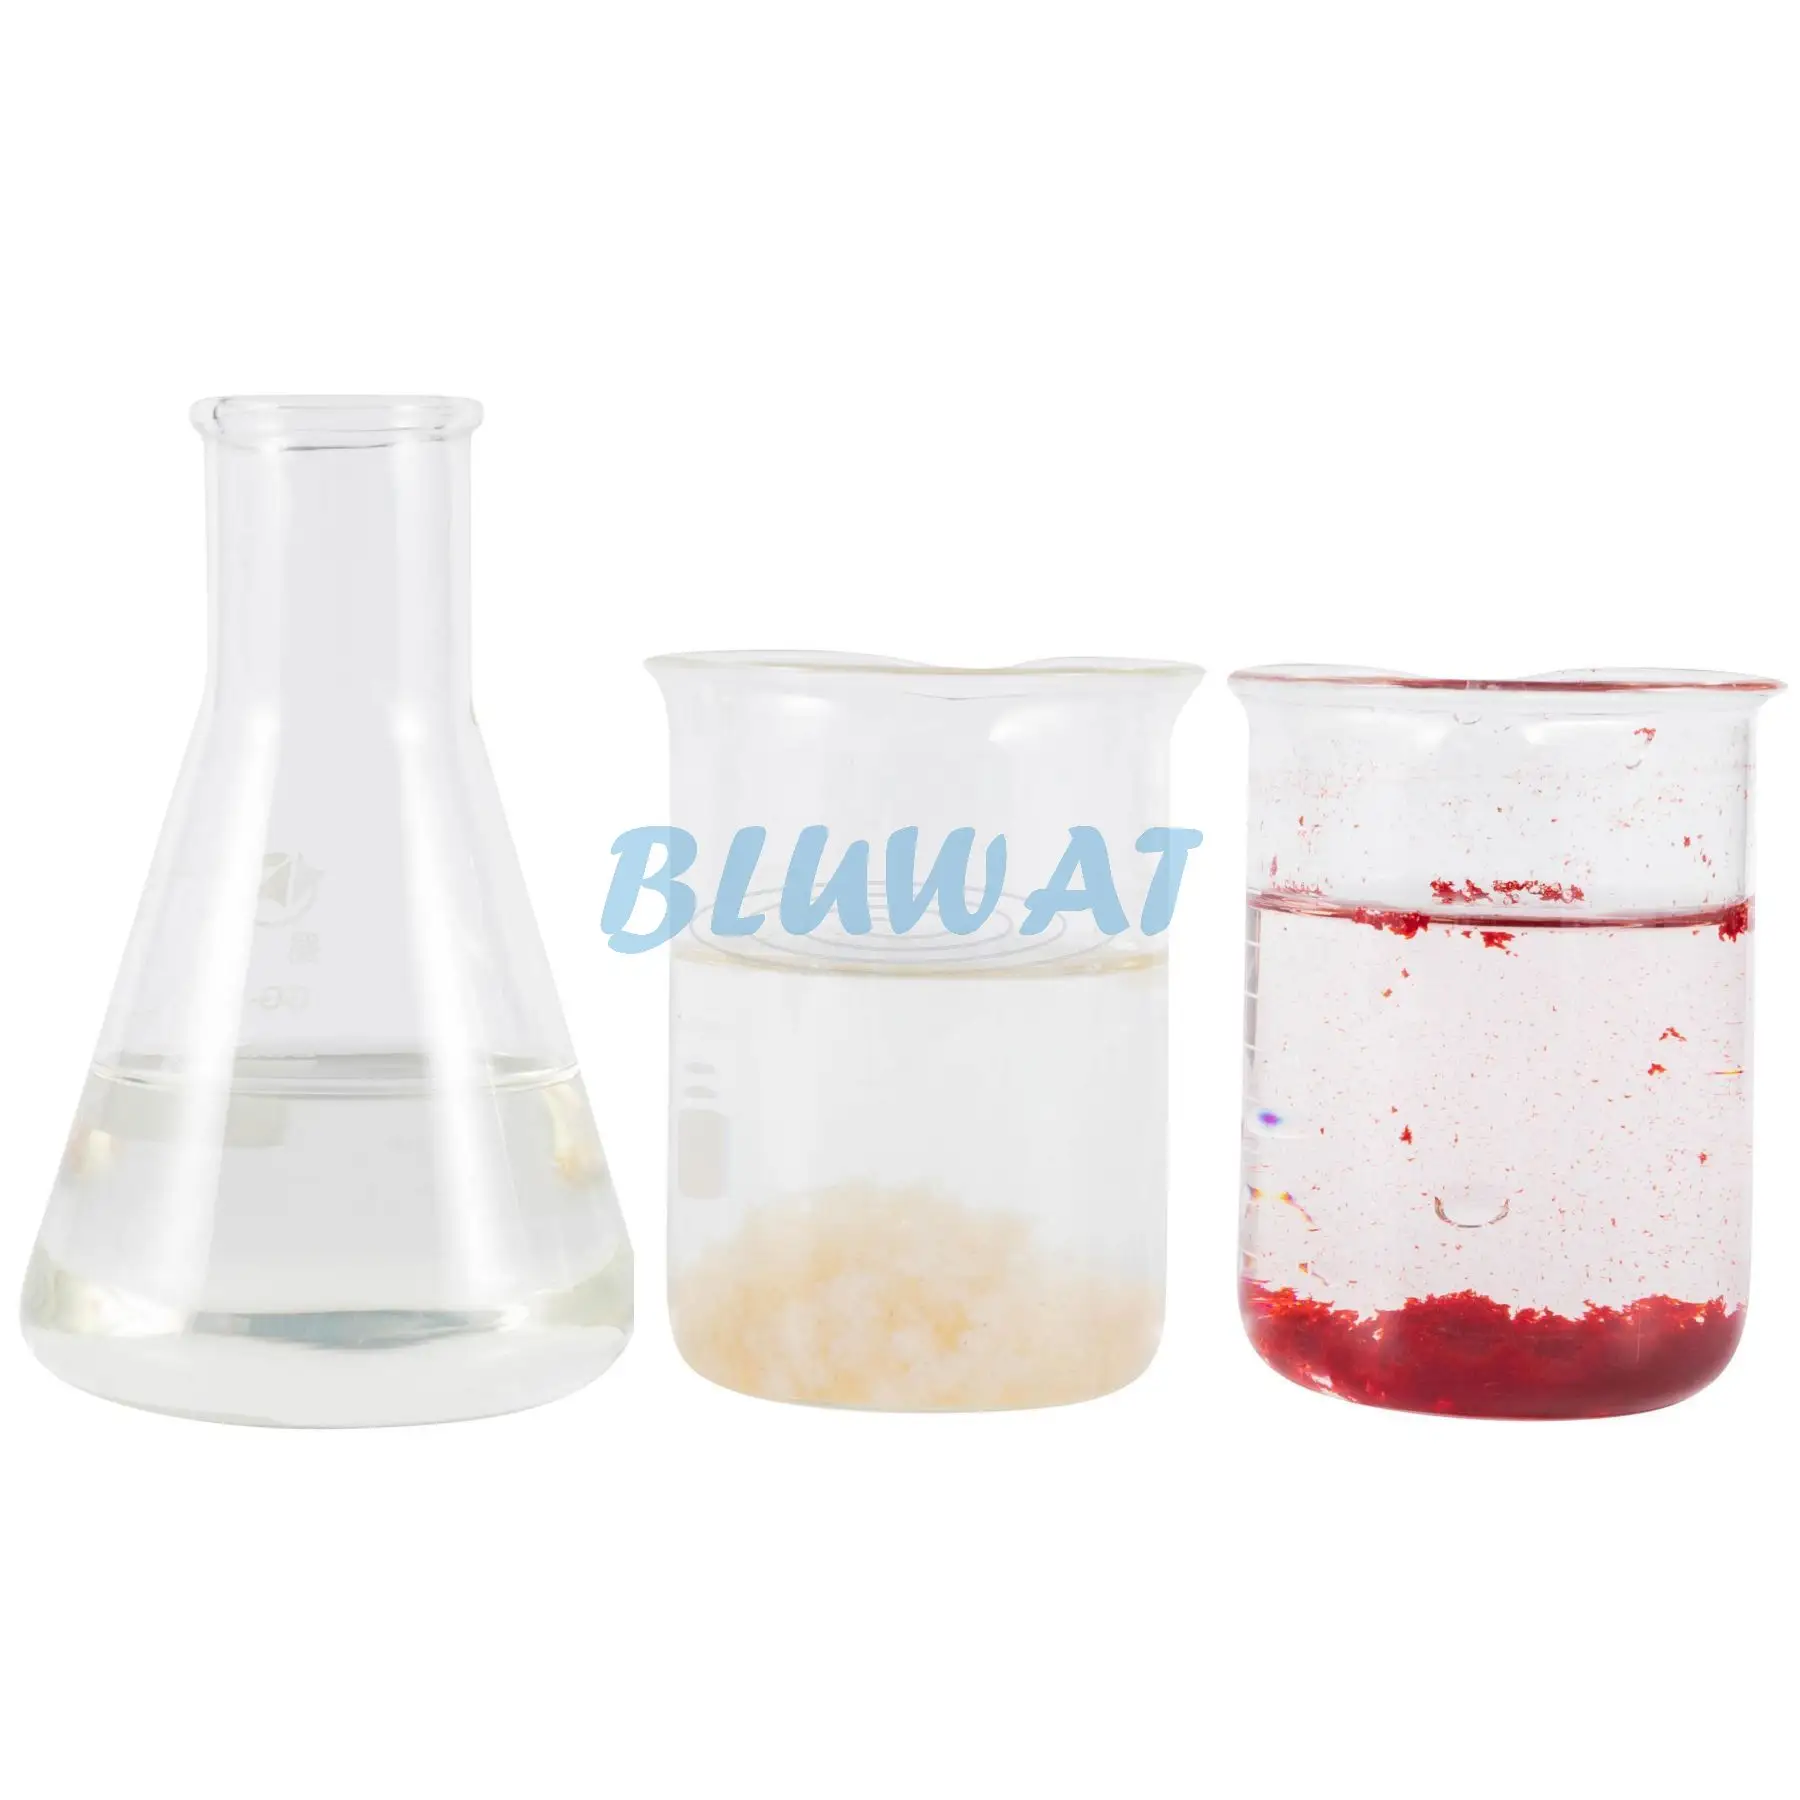 Agente BWD-03 di decolorazione dell'acqua per il trattamento del colore dell'acqua del colorante disperso